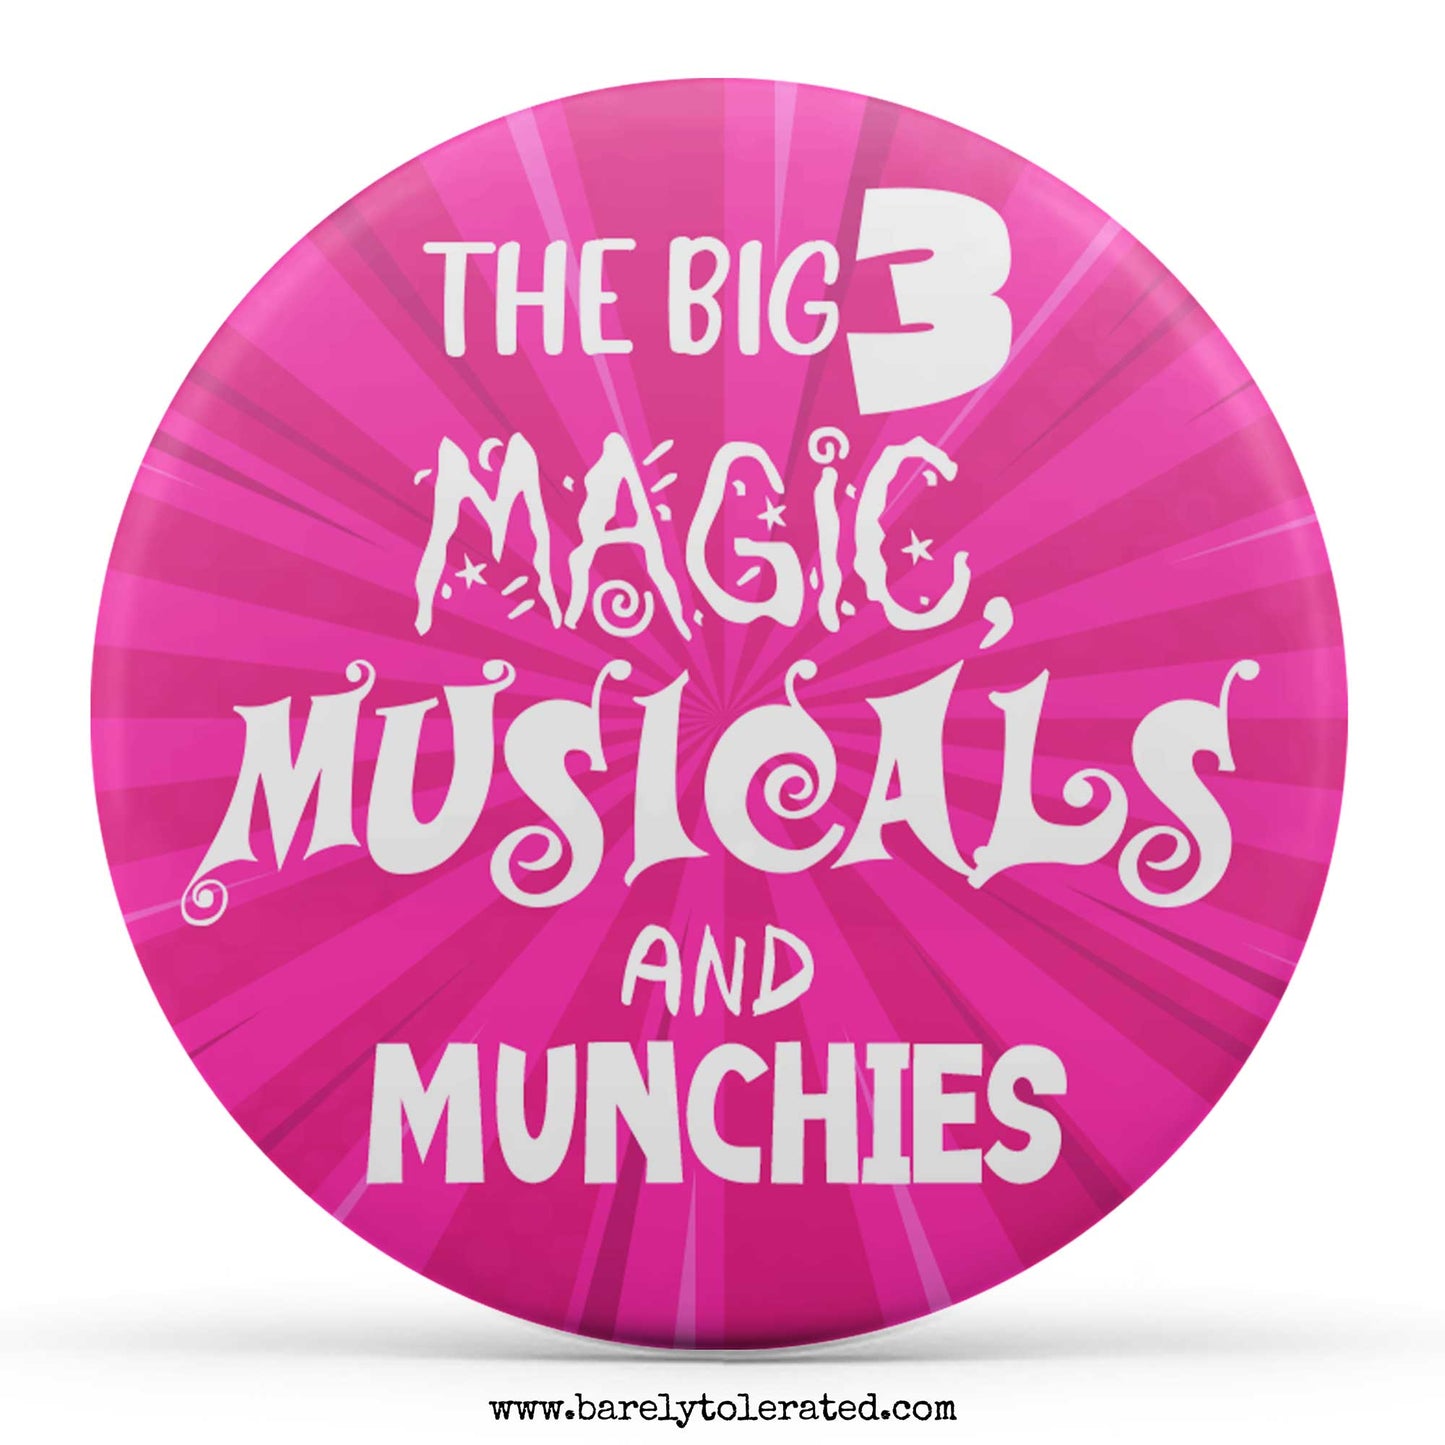 The Big Three - Magic, Musicals and Munchies